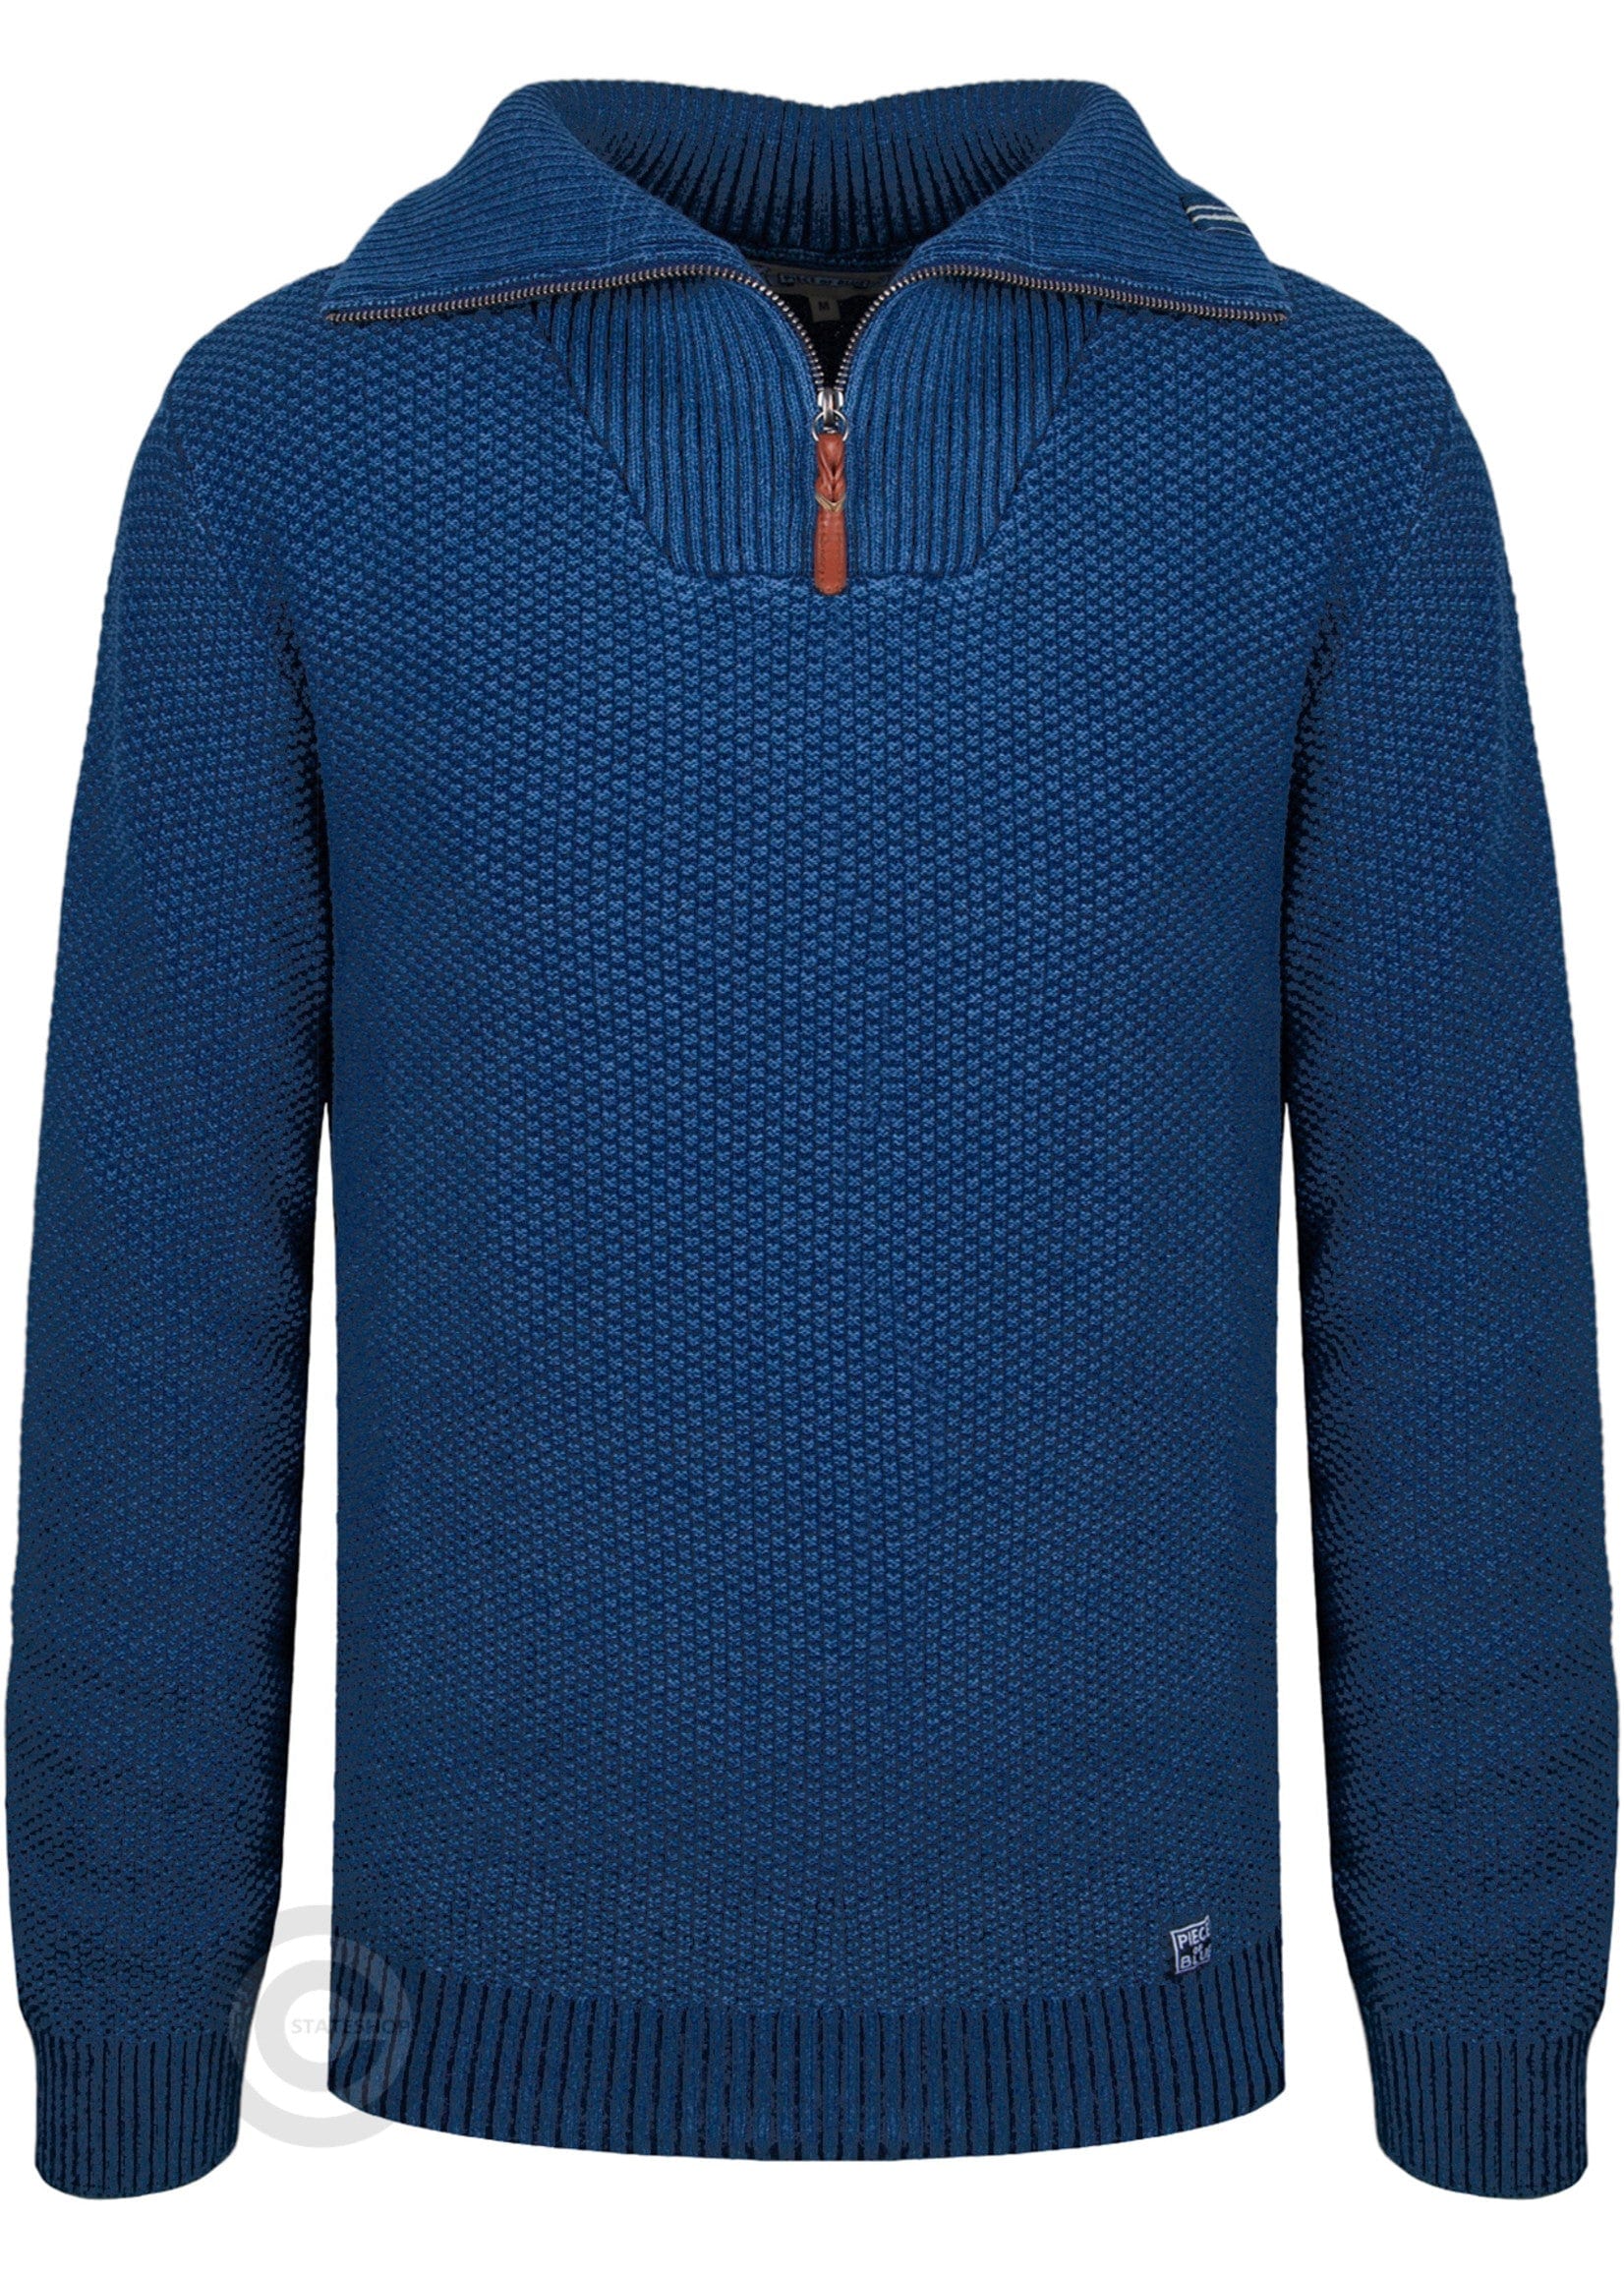 Norfinde Zip-up sweater dark indigo blue style